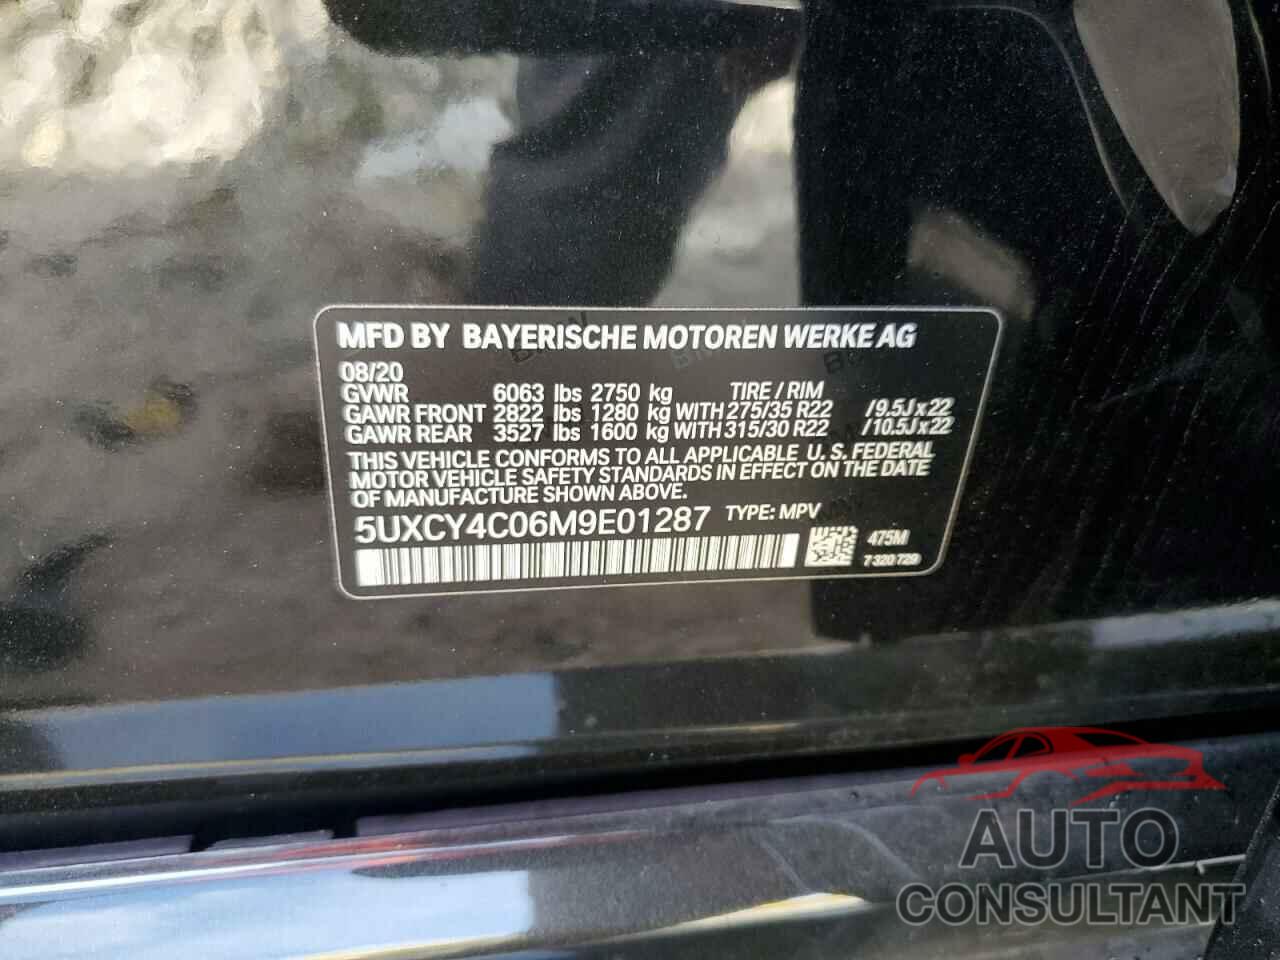 BMW X6 2021 - 5UXCY4C06M9E01287